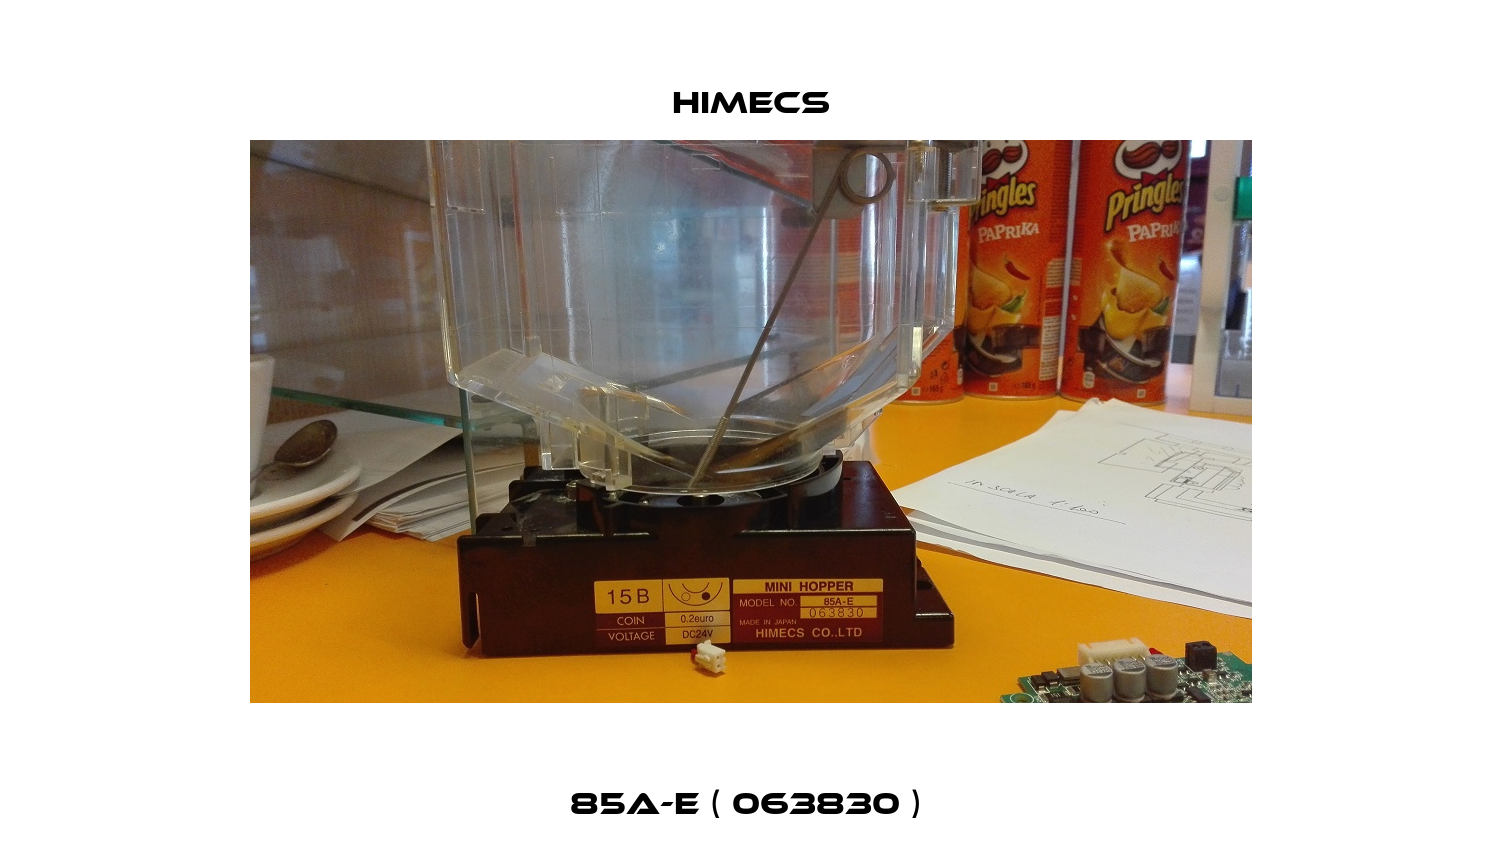 85A-E ( 063830 )  Himecs